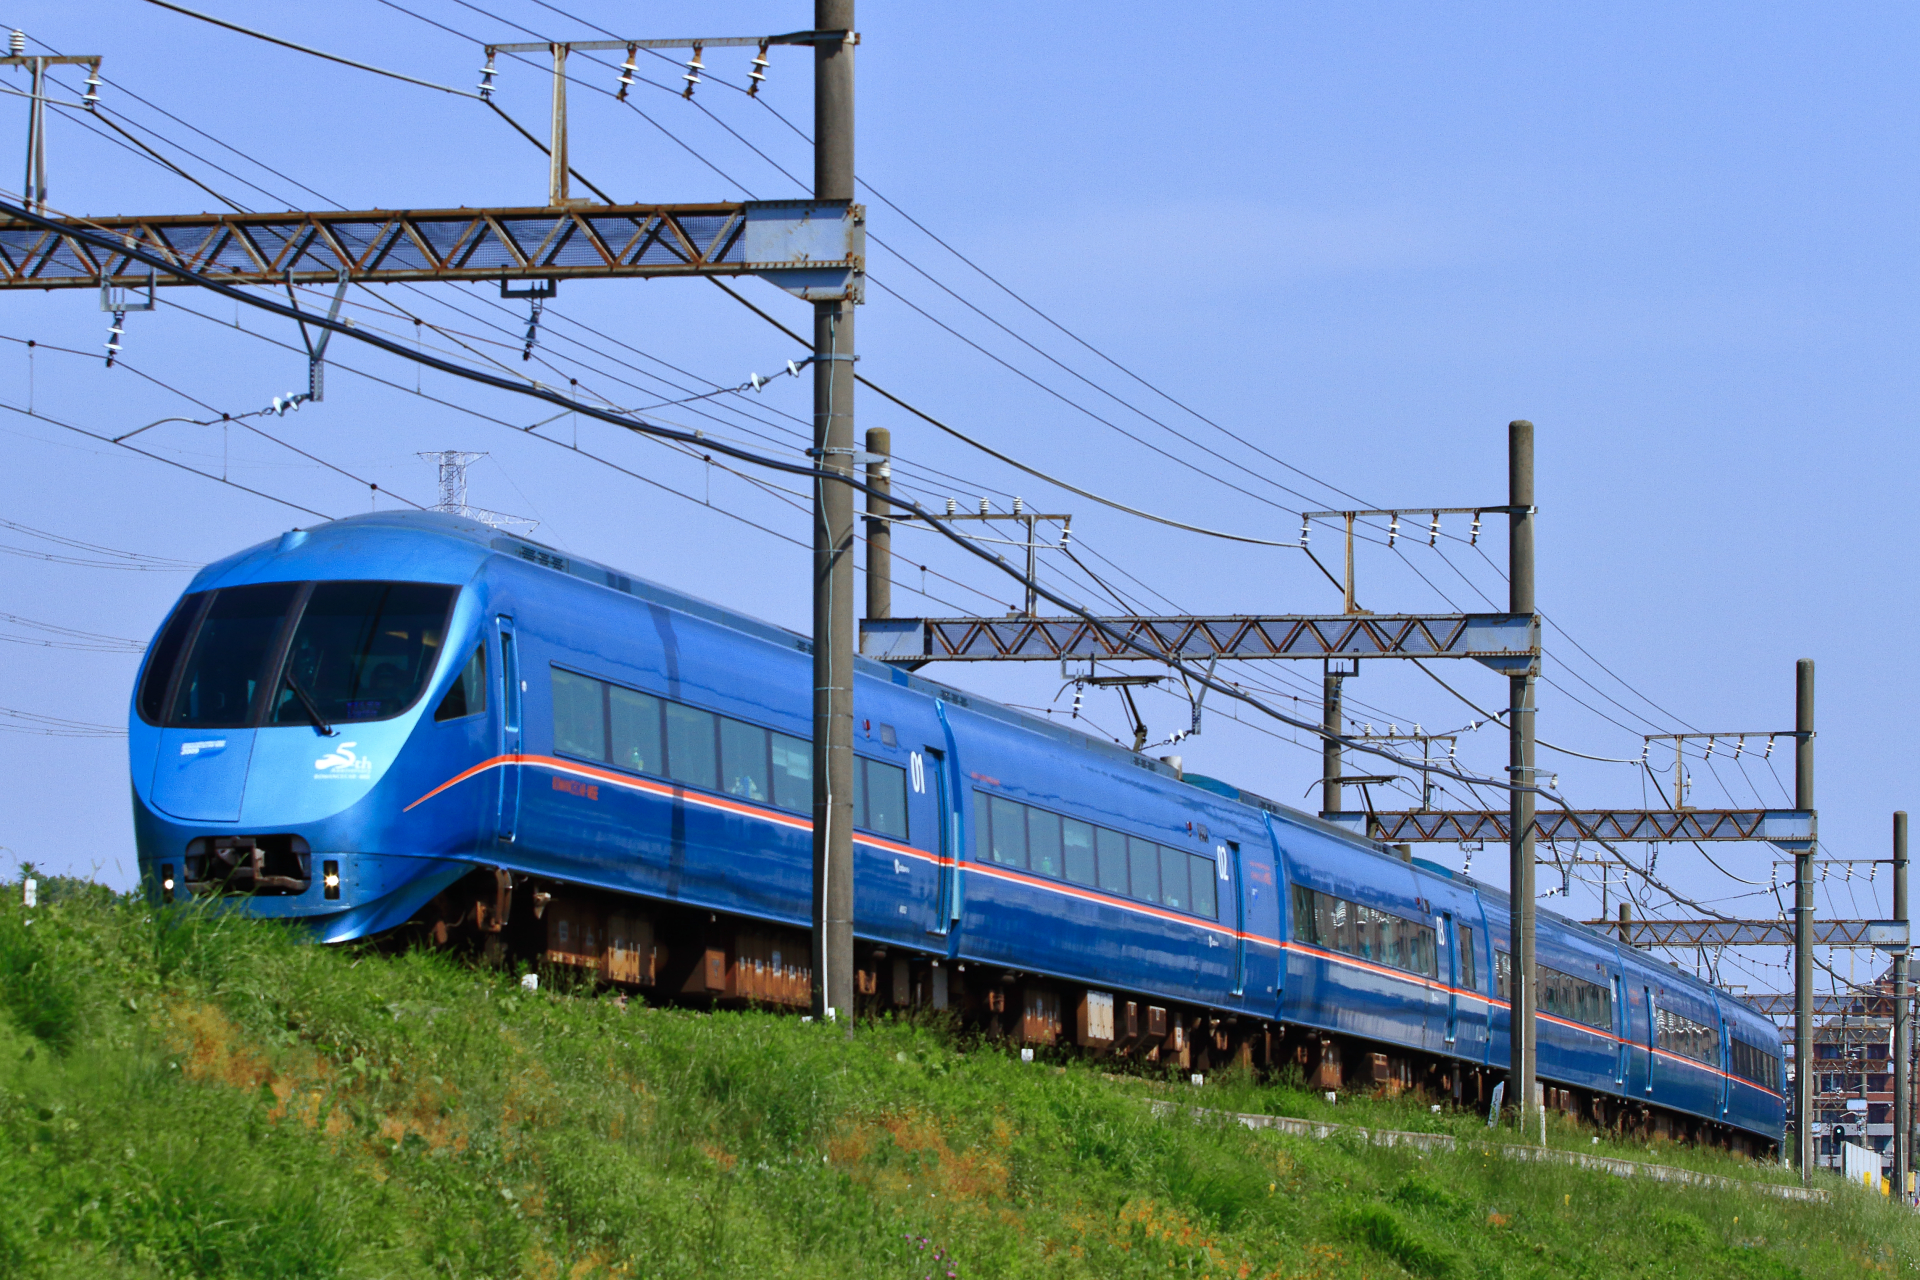 小田急のmseは登場時から御殿場線への直通を想定していたのか Odapedia 小田急を中心とした鉄道に関するブログメディア